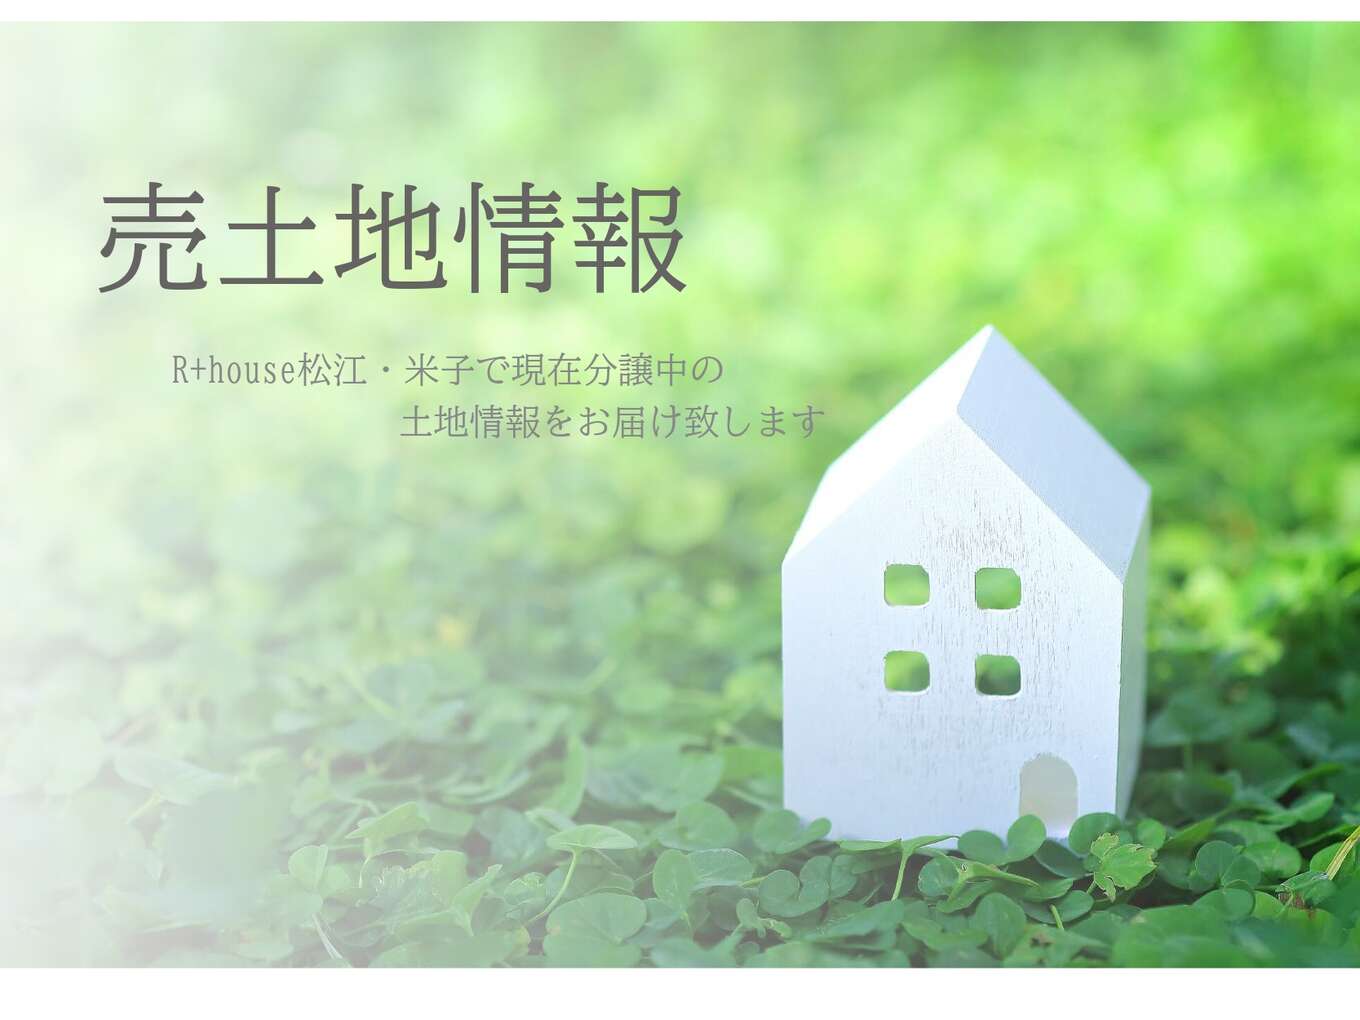 緑のなかにある白い家の模型